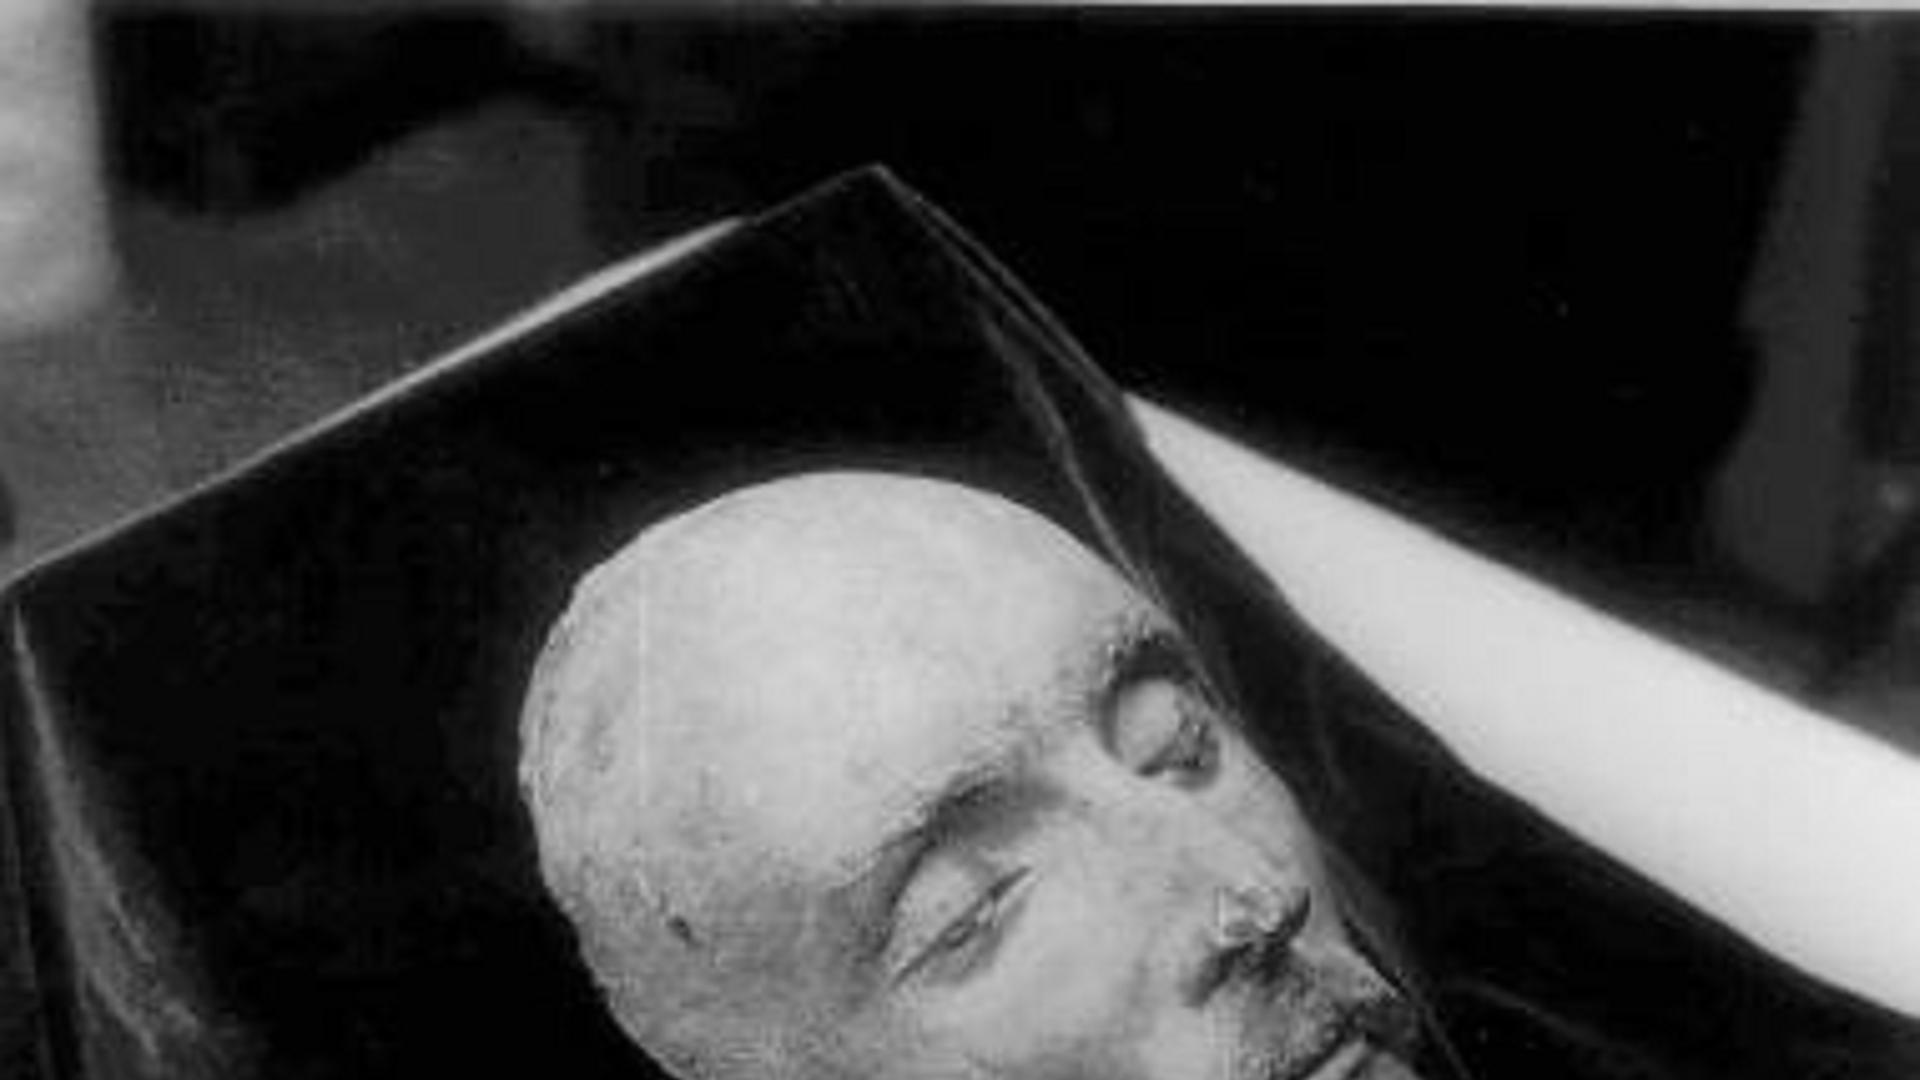 Shakespeares Totenmaske - seine Dramen leben von menschlichen Konflikten.